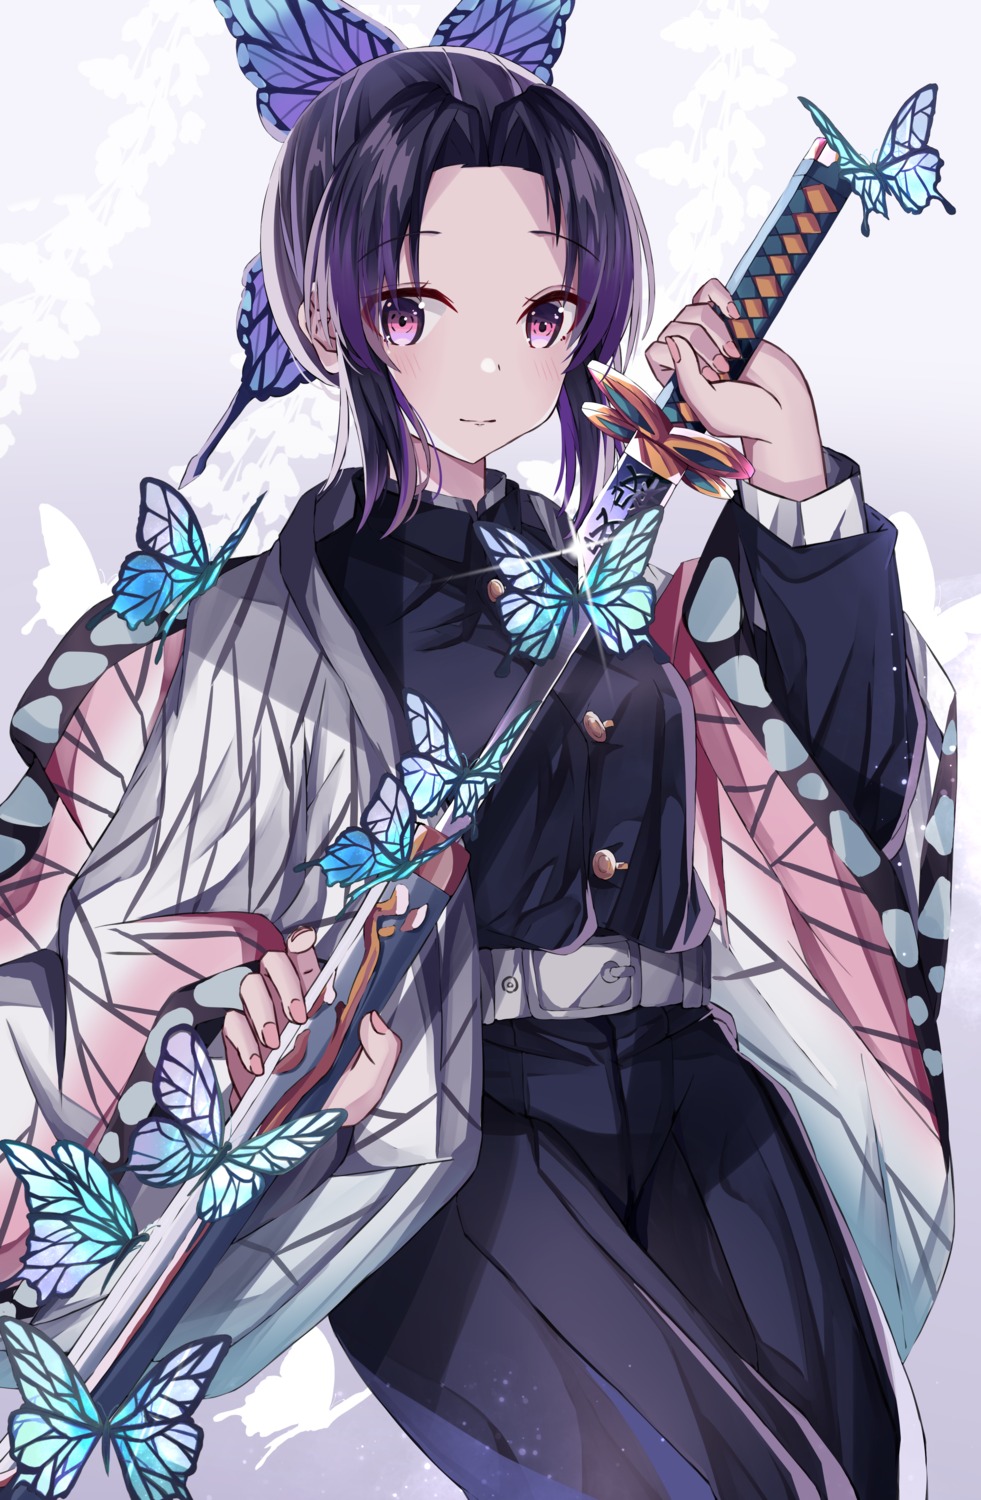 japanese_clothes kimetsu_no_yaiba kochou_shinobu norazura sword uniform